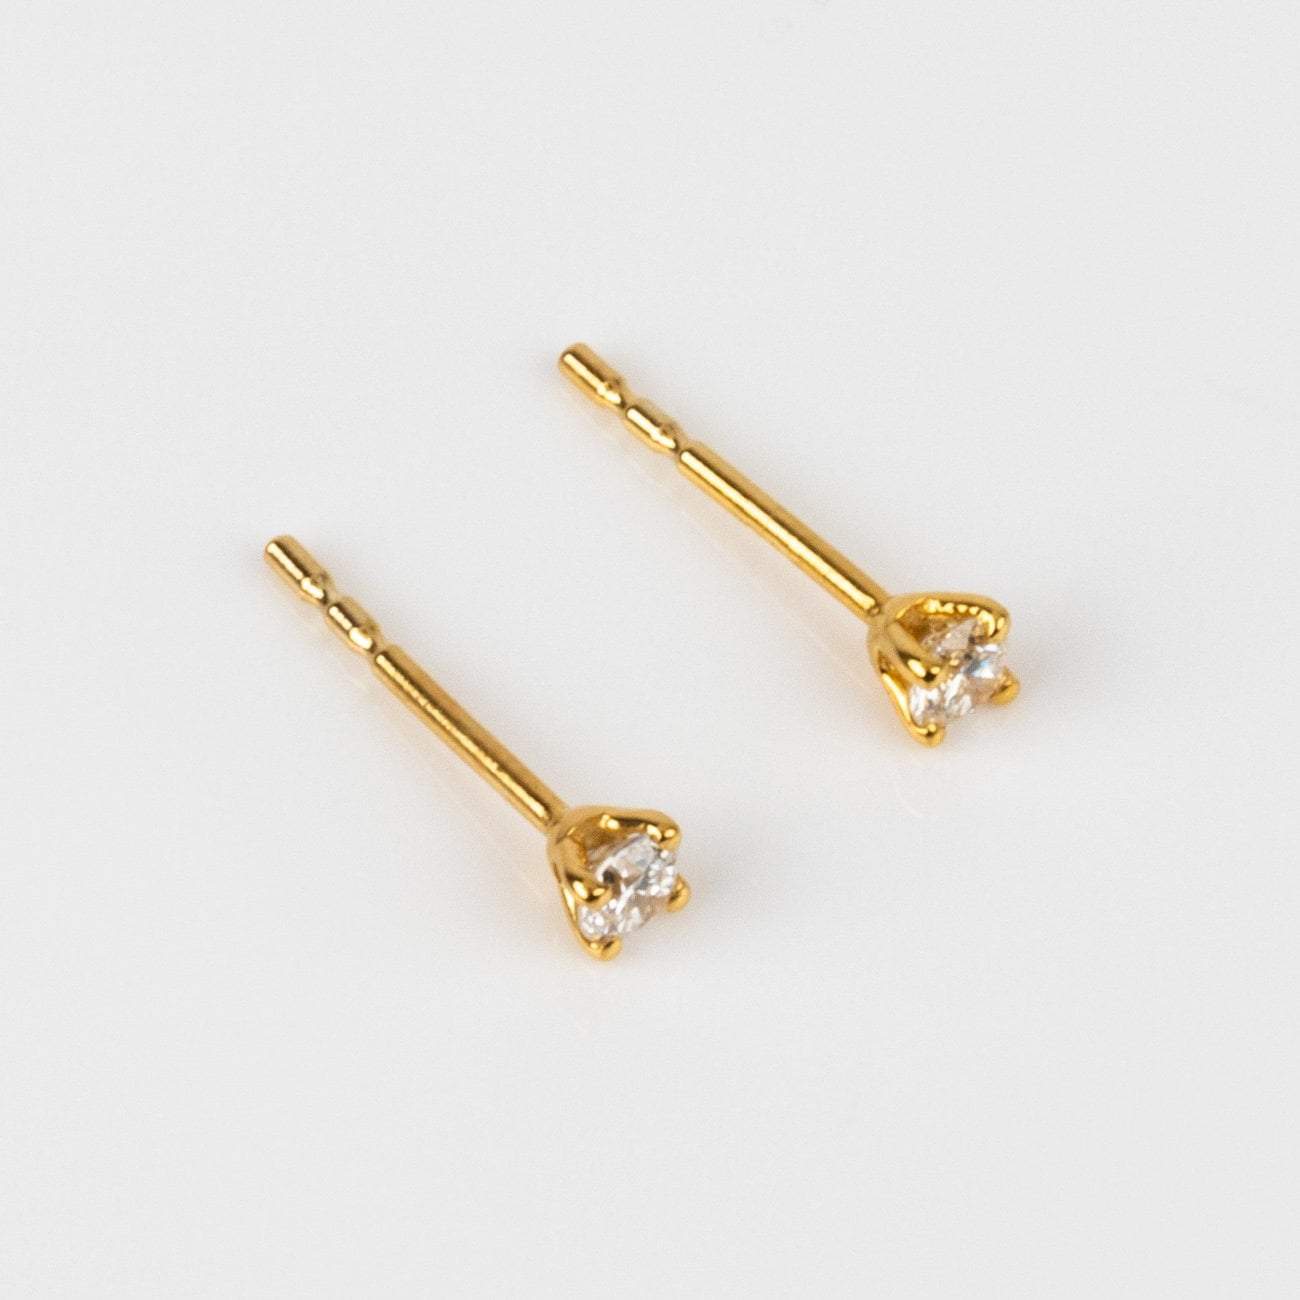 18ct Yellow Gold Pearl & Diamond Earrings